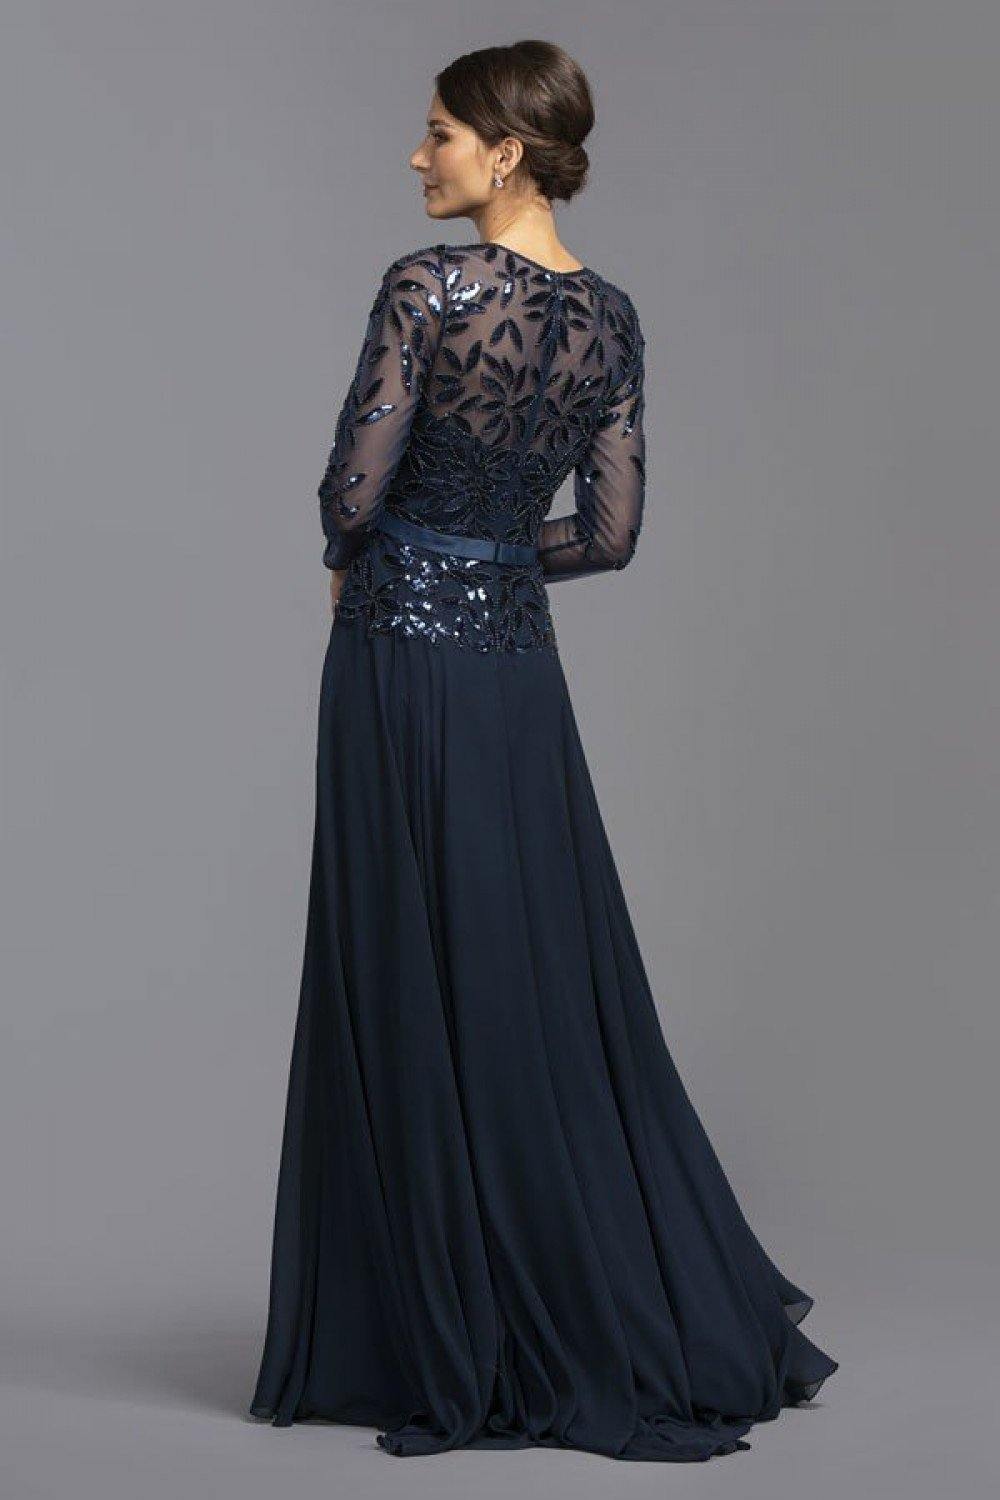 Sequin Embellished Long Formal Dress - The Dress Outlet ASpeed